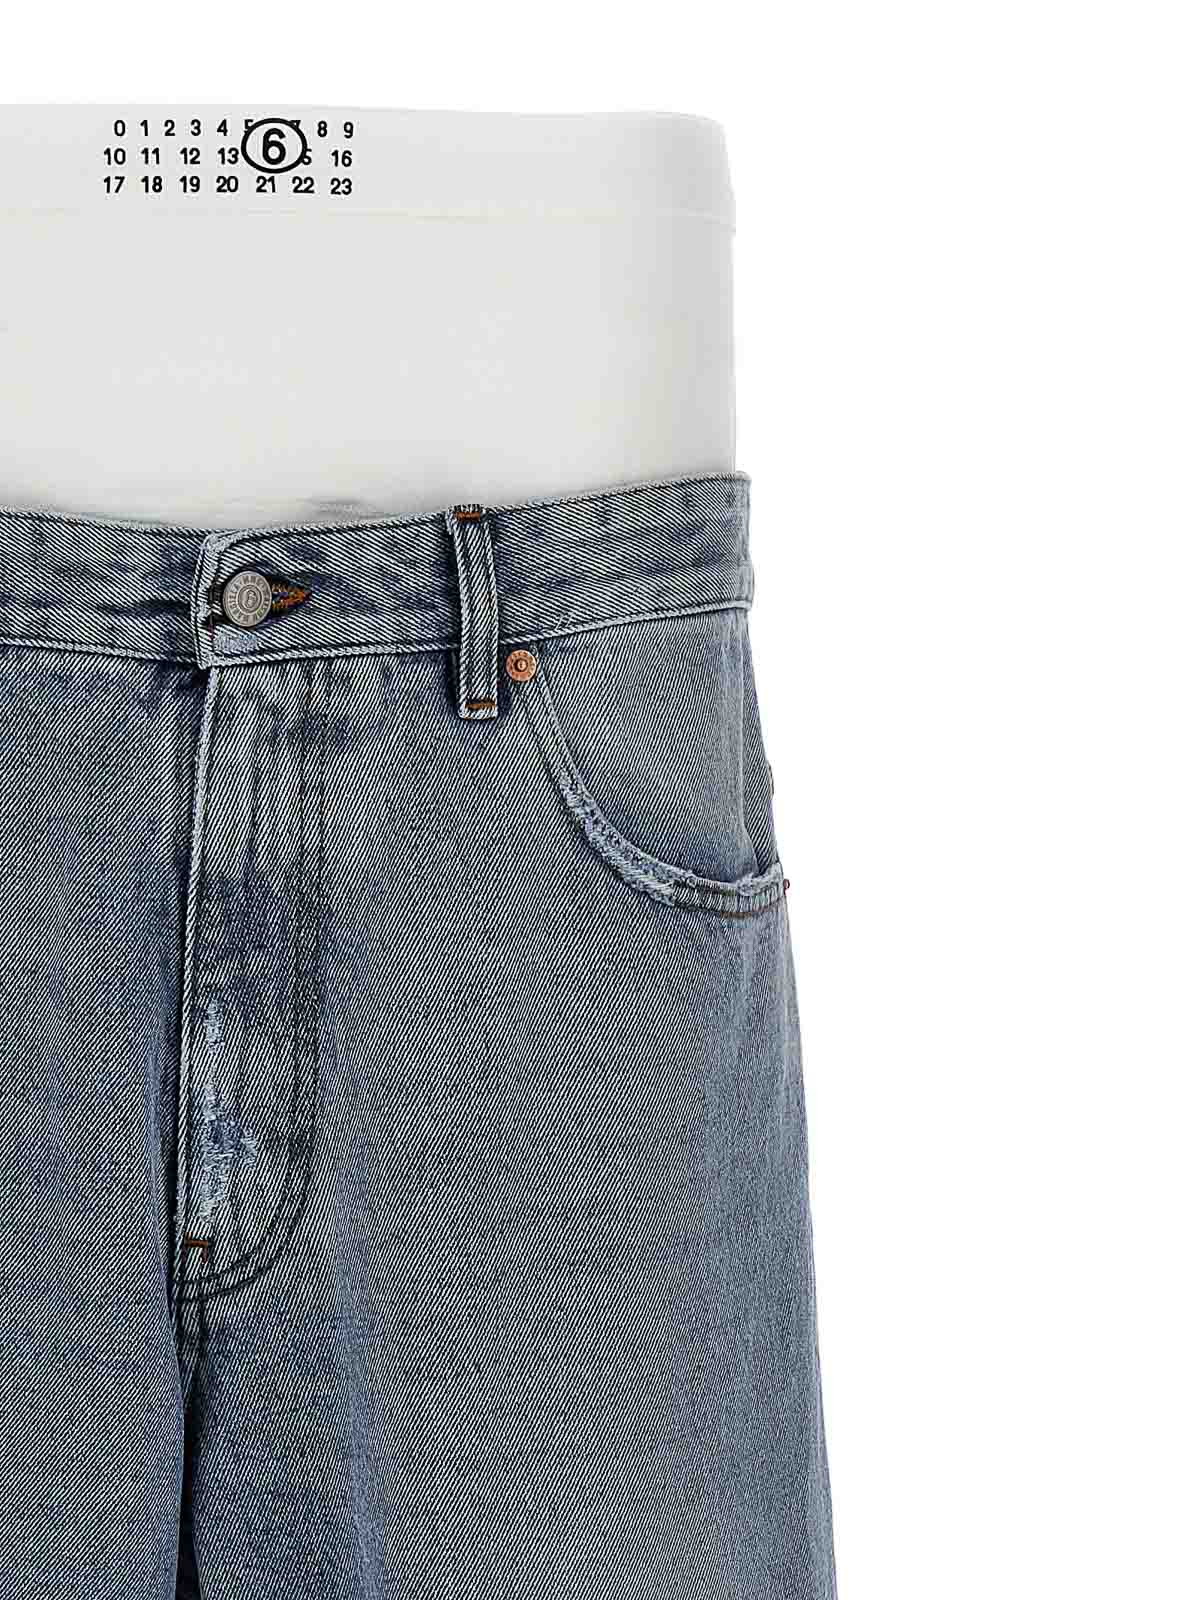 Bootcut jeans MM6 Maison Margiela - Boxer insert jeans - S62LB0148S30589976